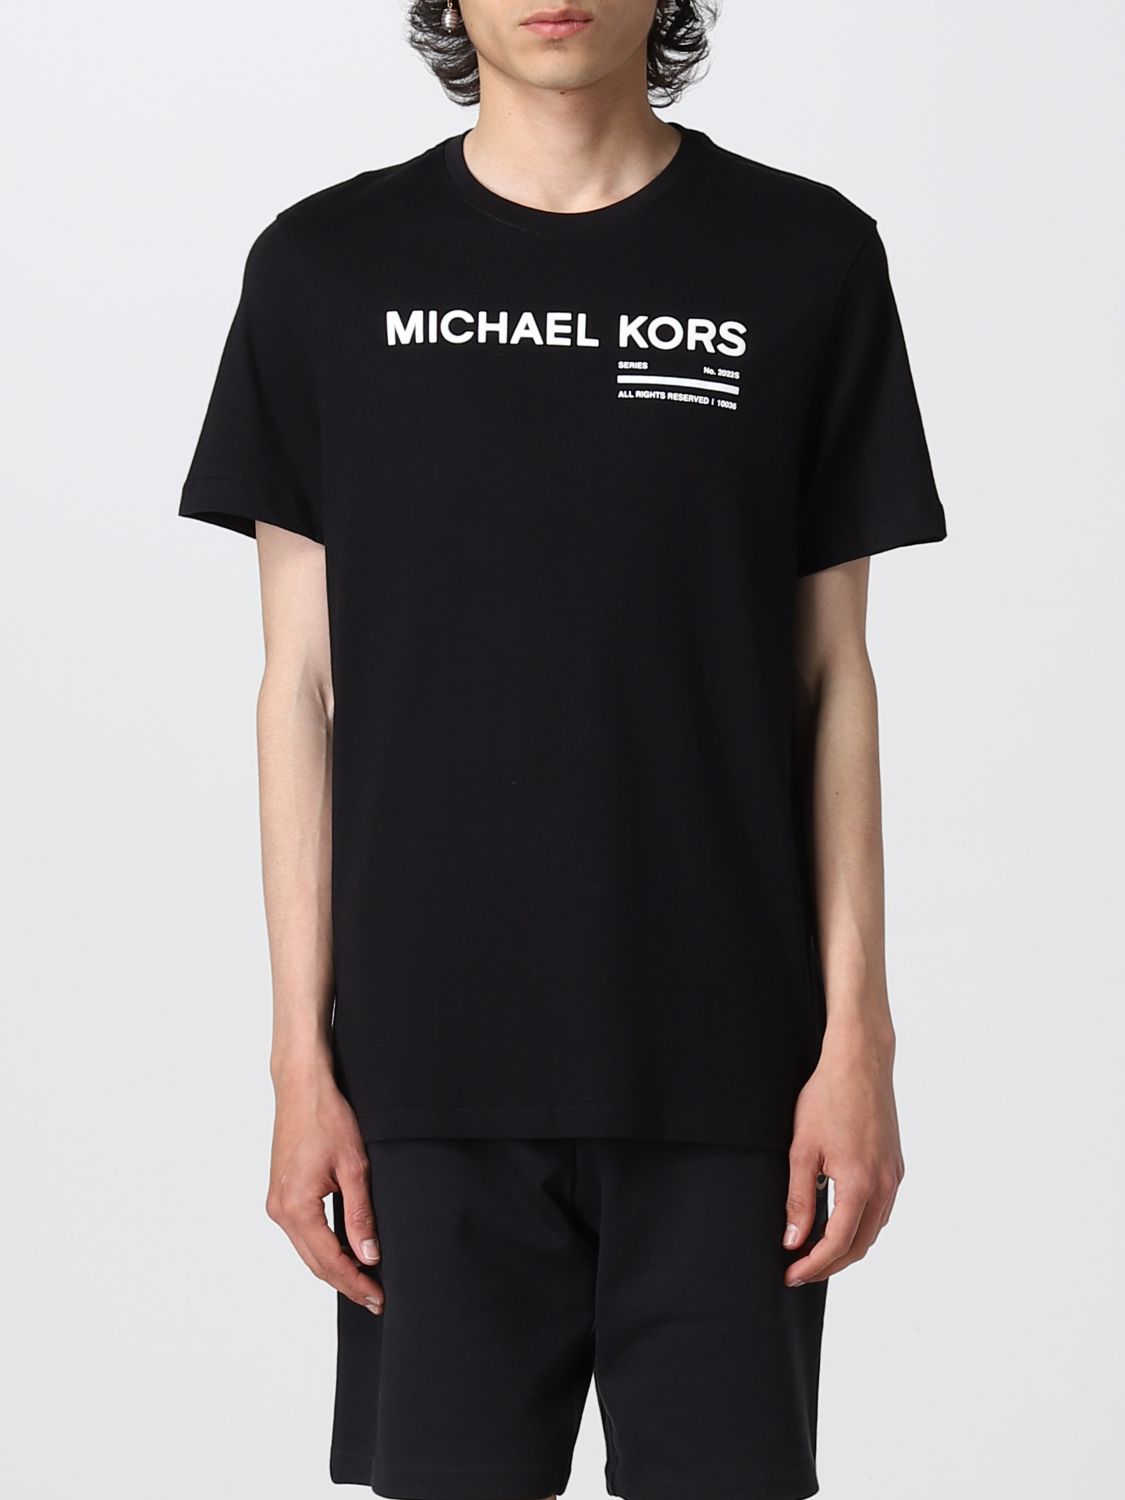 Mens Designer Tshirts  Polo Shirts  Michael Kors